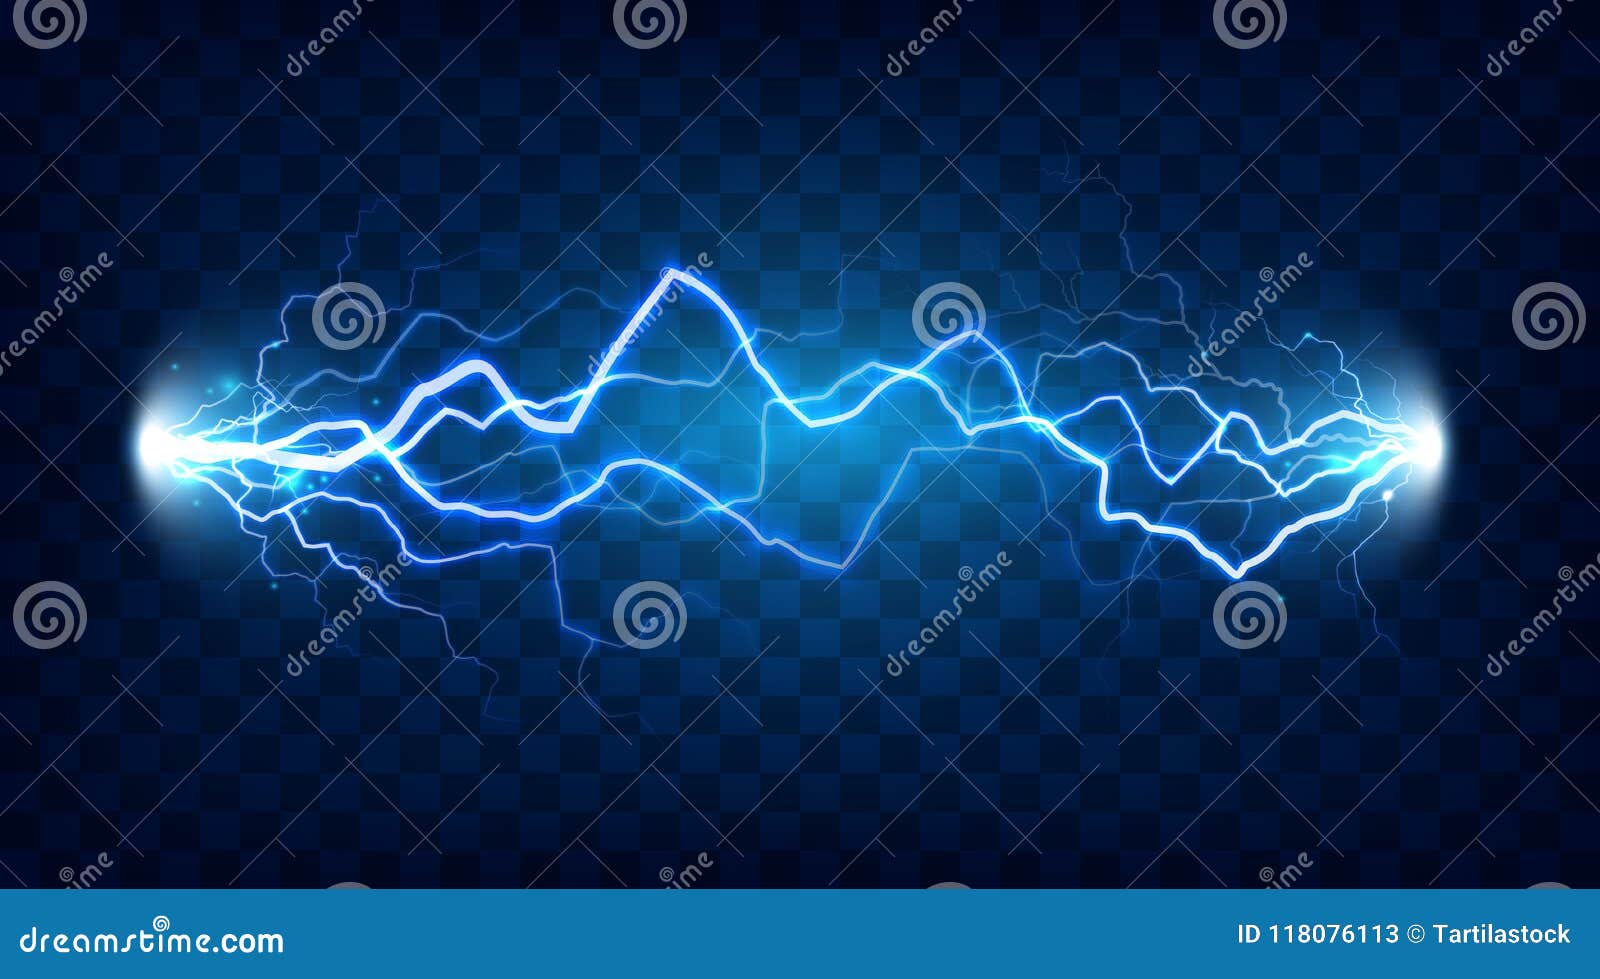 Khám phá những hình ảnh về Electric Discharge Shock và tìm hiểu về sức mạnh của điện trong chúng ta.